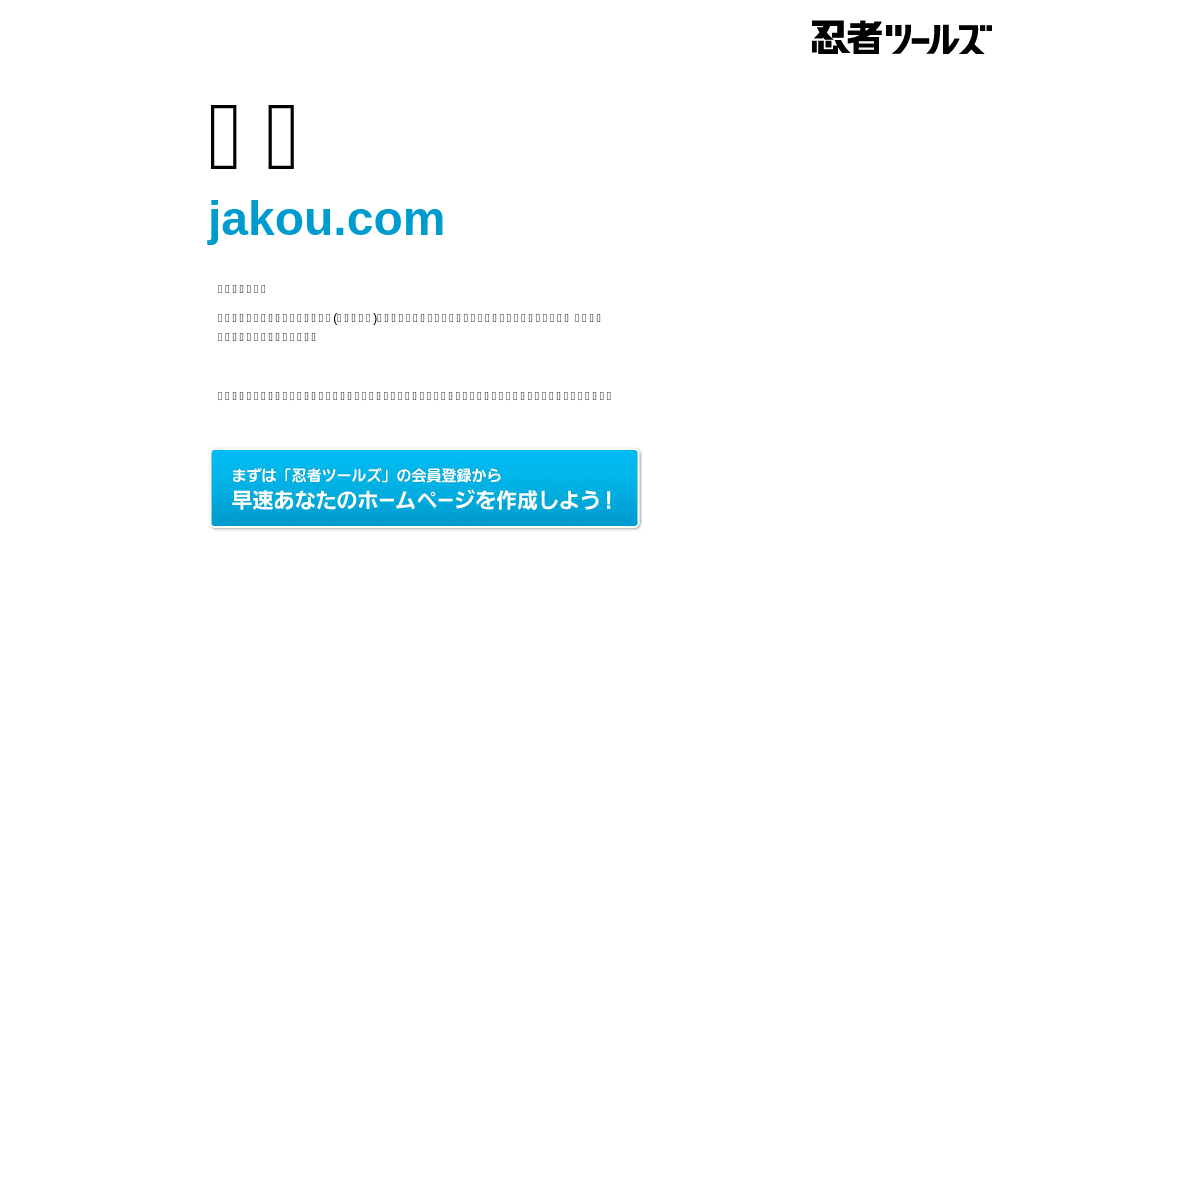 jakou.com | 忍者ホームページ - 忍者ツールズ